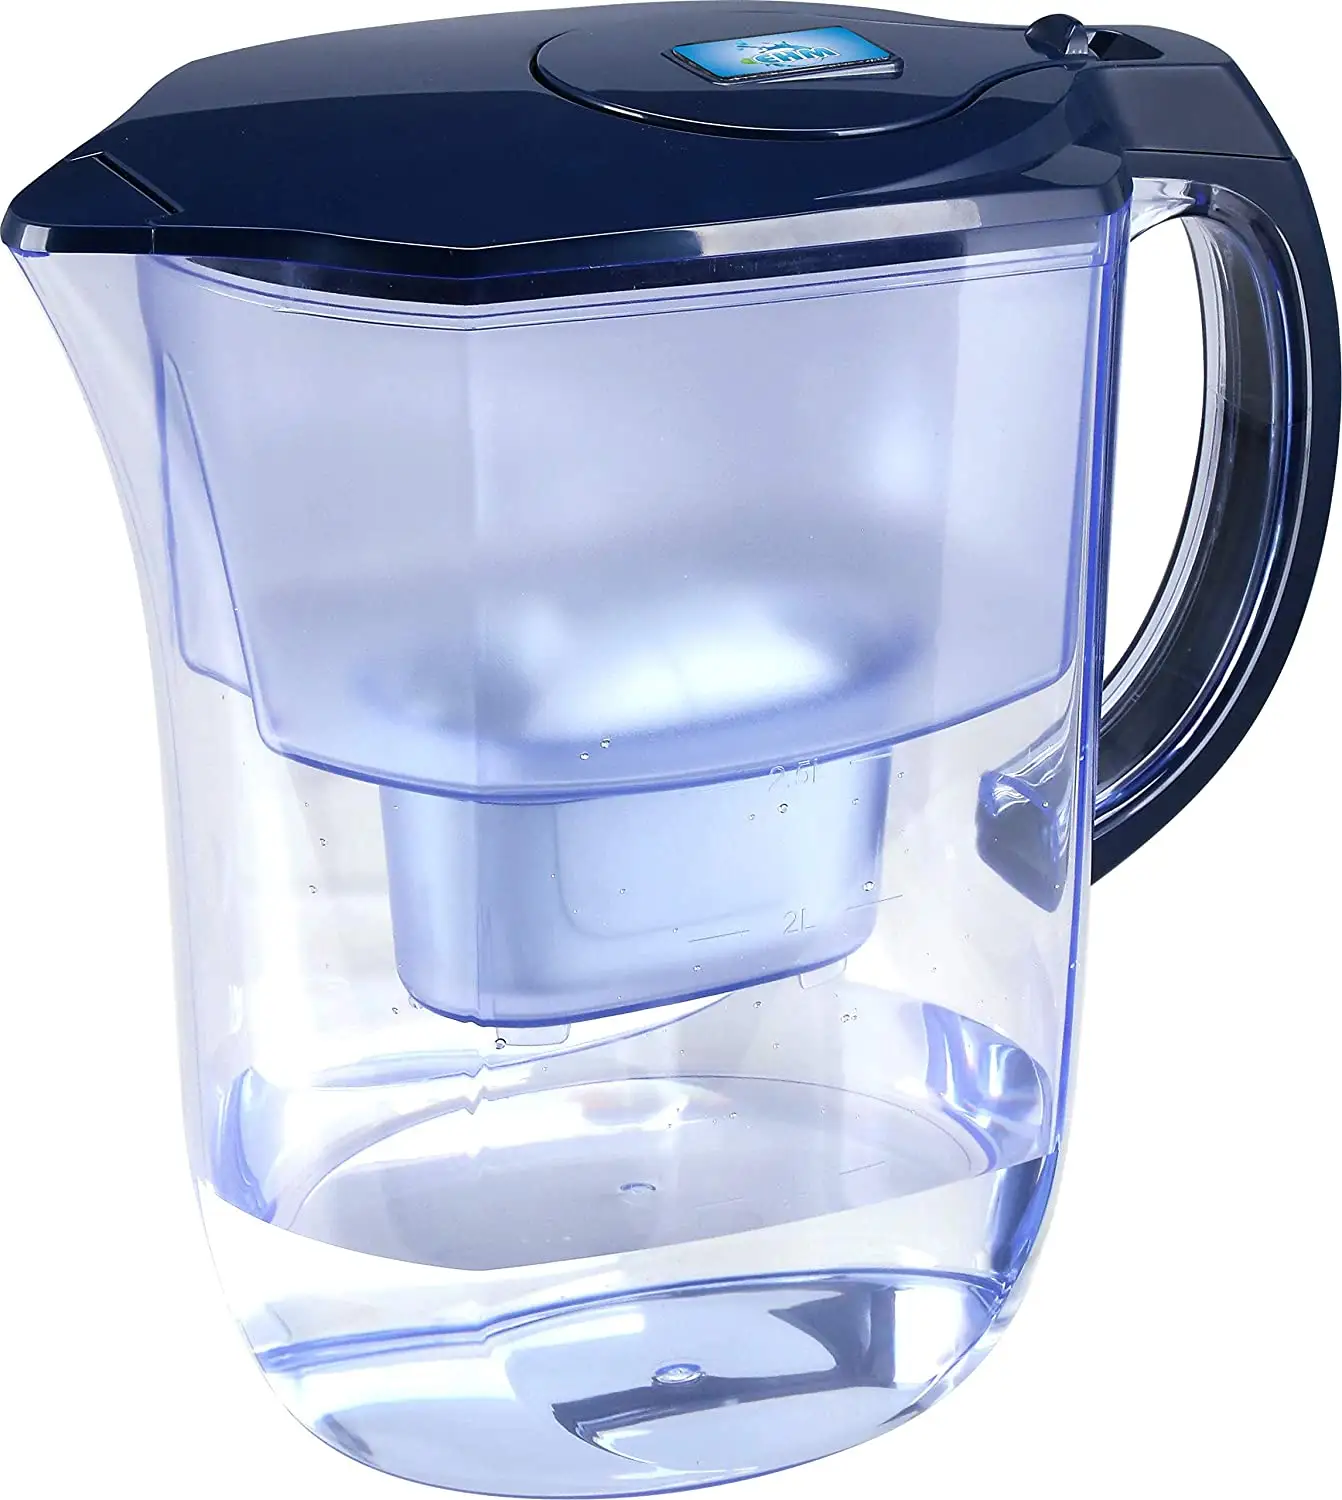 Filter air alkali Premium Pitcher 3,8l, Filter karbon aktif bebas BPA, toksin Bersih Sehat, alkalalized